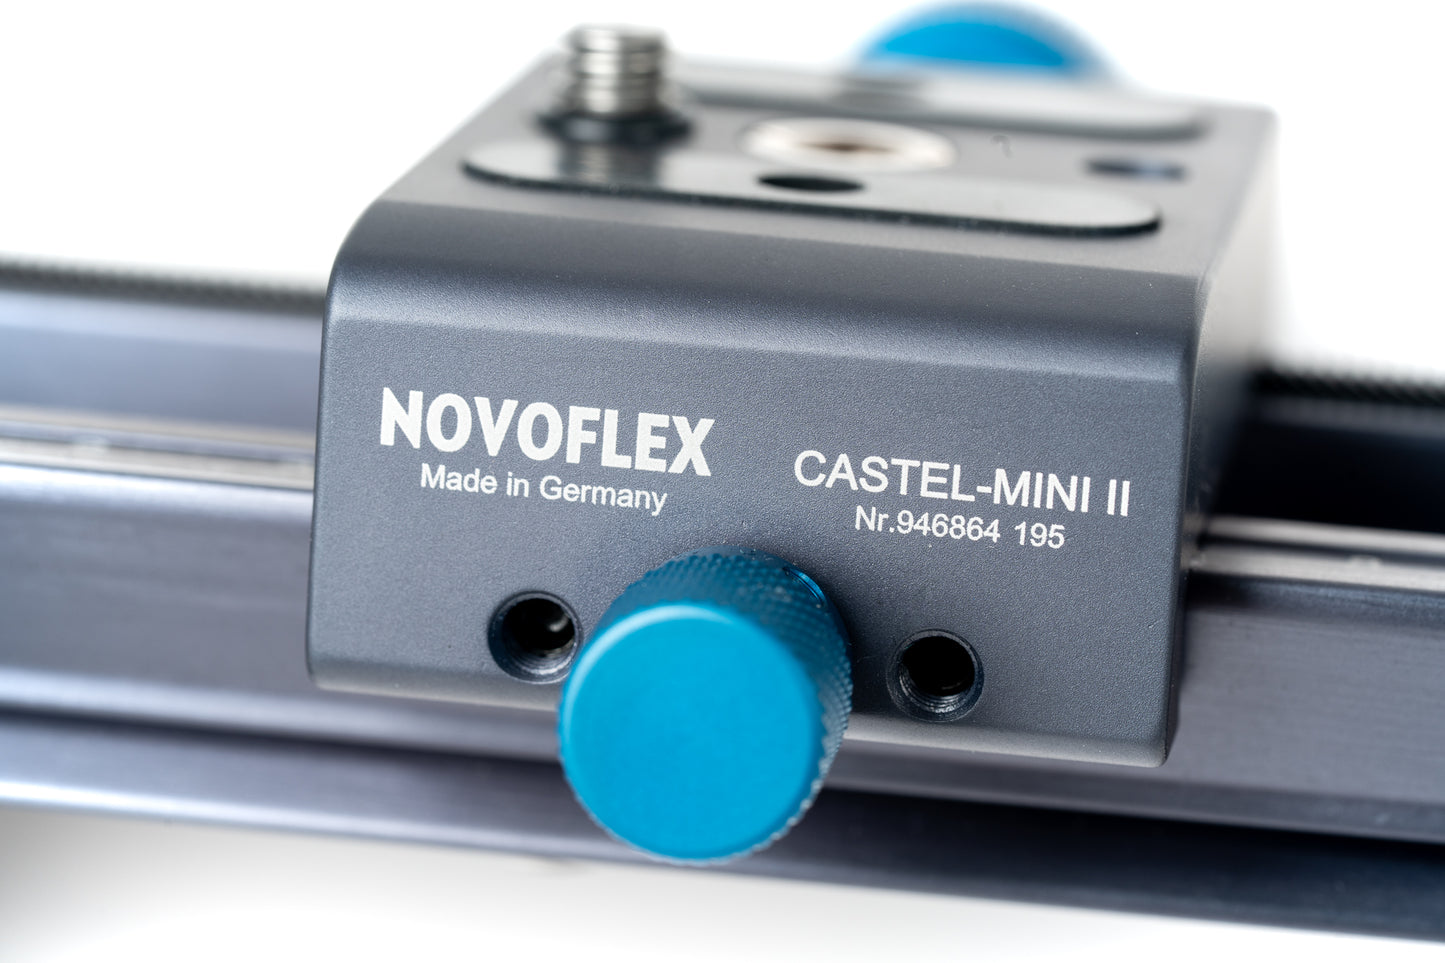 Novoflex Repro 650 for VALOI Professional Copy Stand